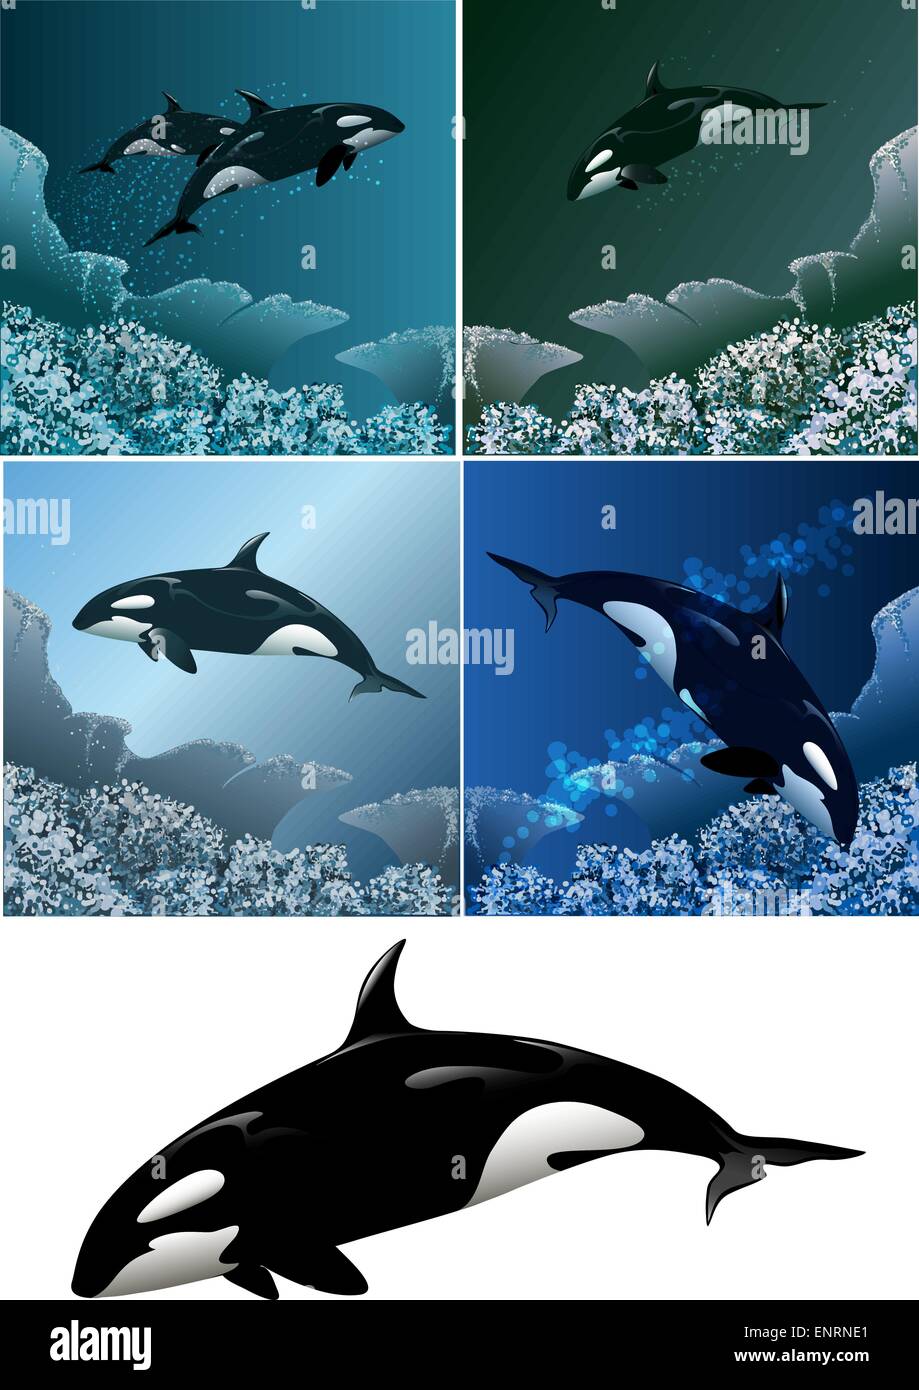 Ensemble d'orques y compris cinq images - épaulard isolées en noir et blanc et l'orque Illustration de Vecteur